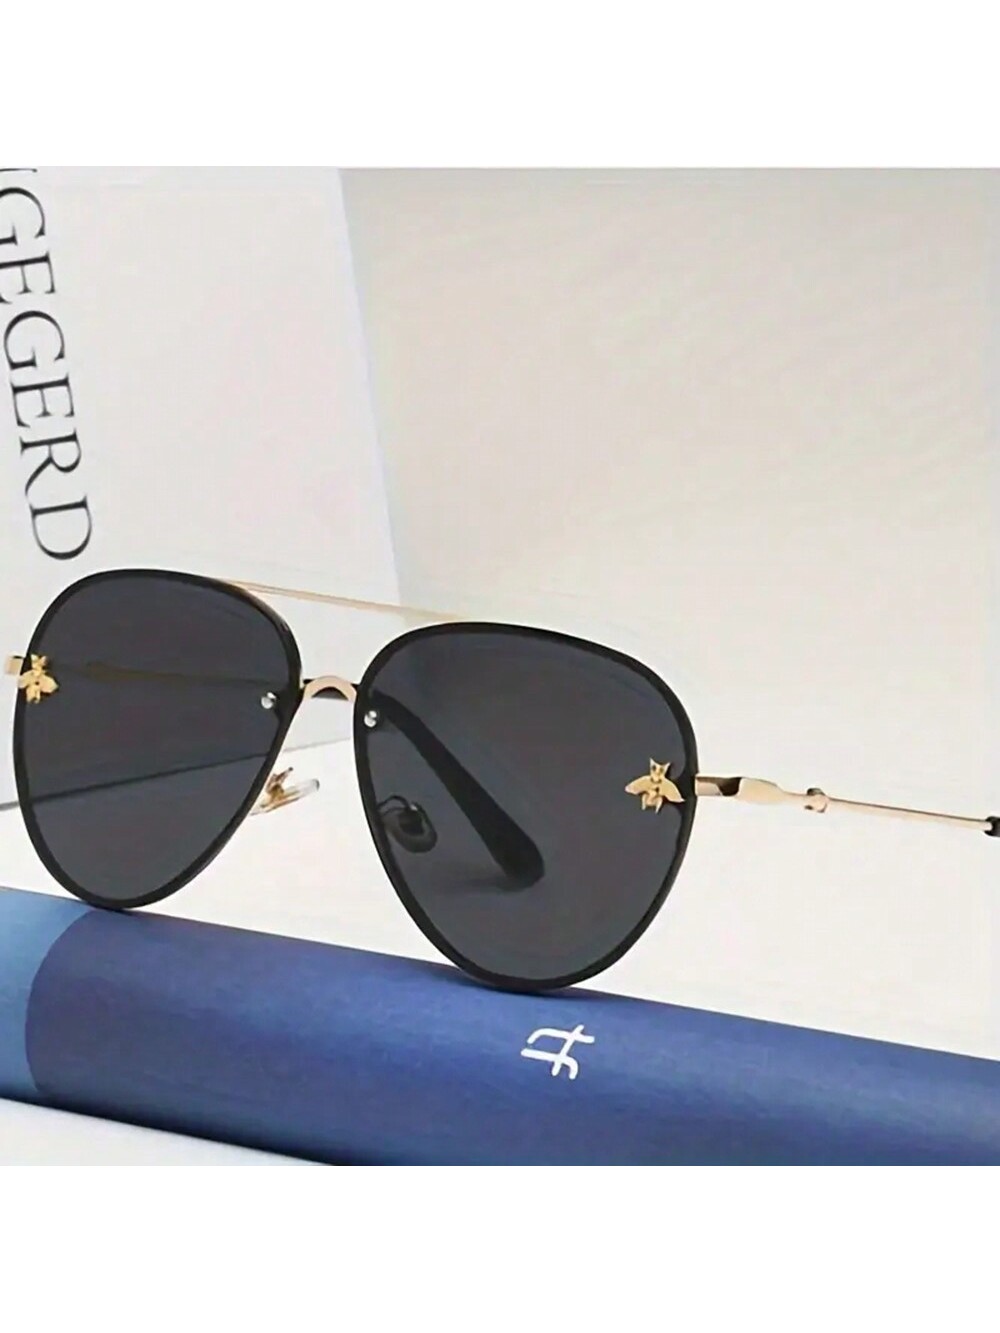 1 шт. новые модные квадратные металлические солнцезащитные очки унисекс в стиле ретро Little Bee фотографии